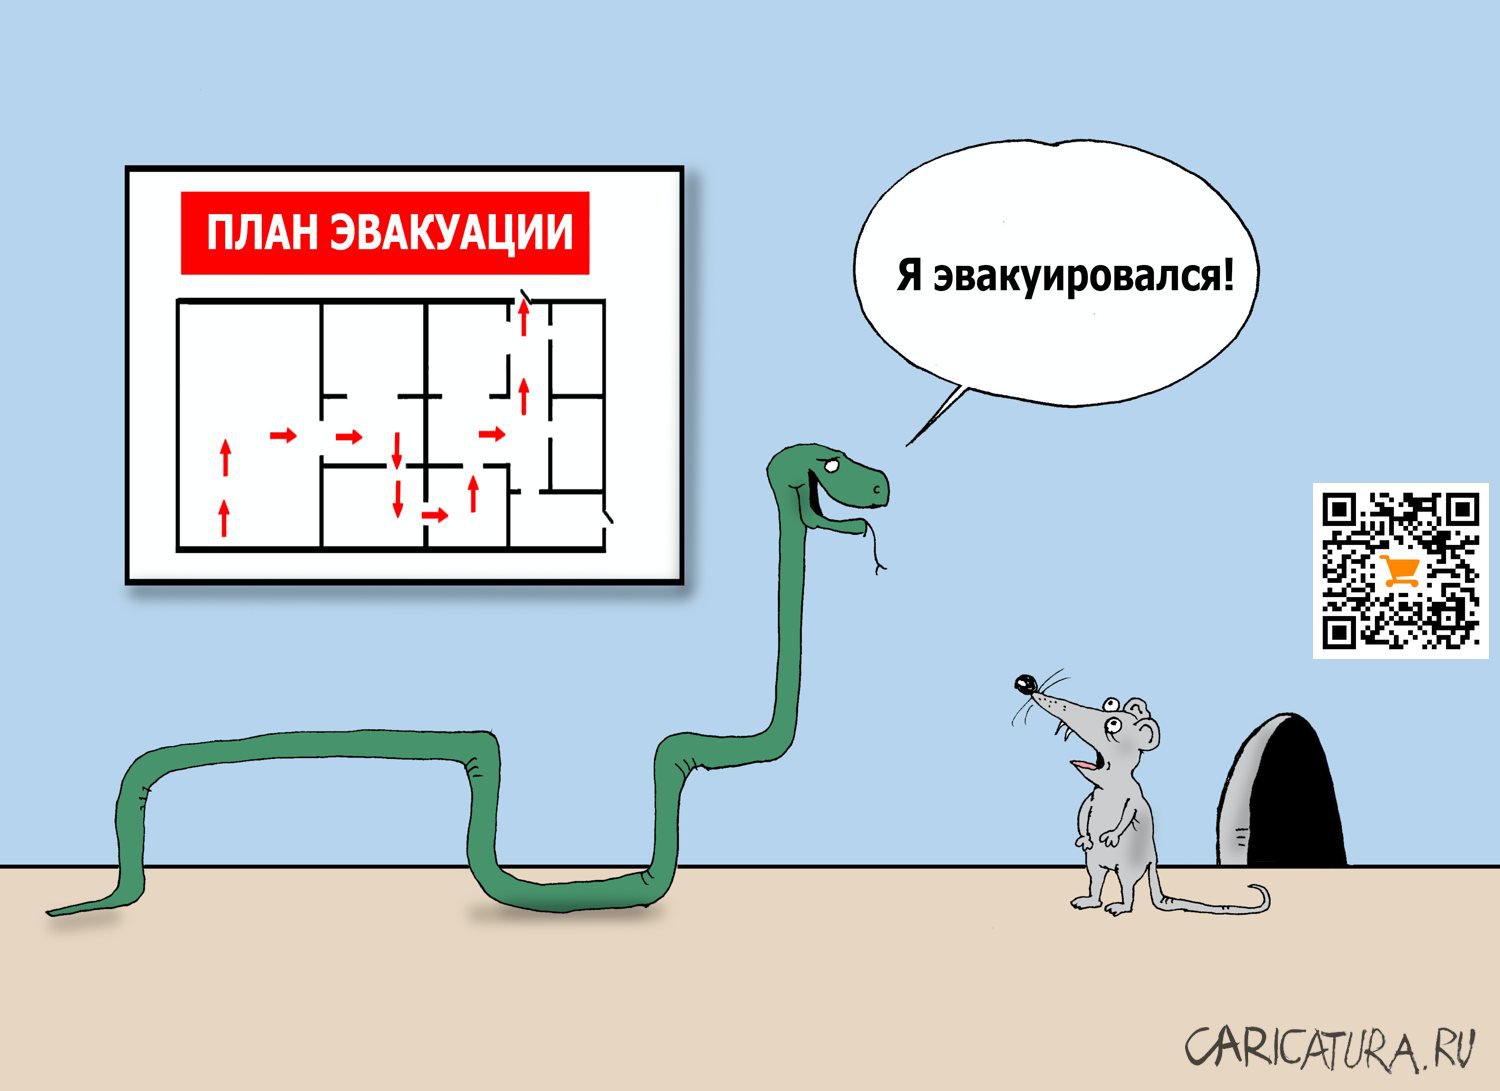 Карикатура "Мимикрия", Валерий Тарасенко